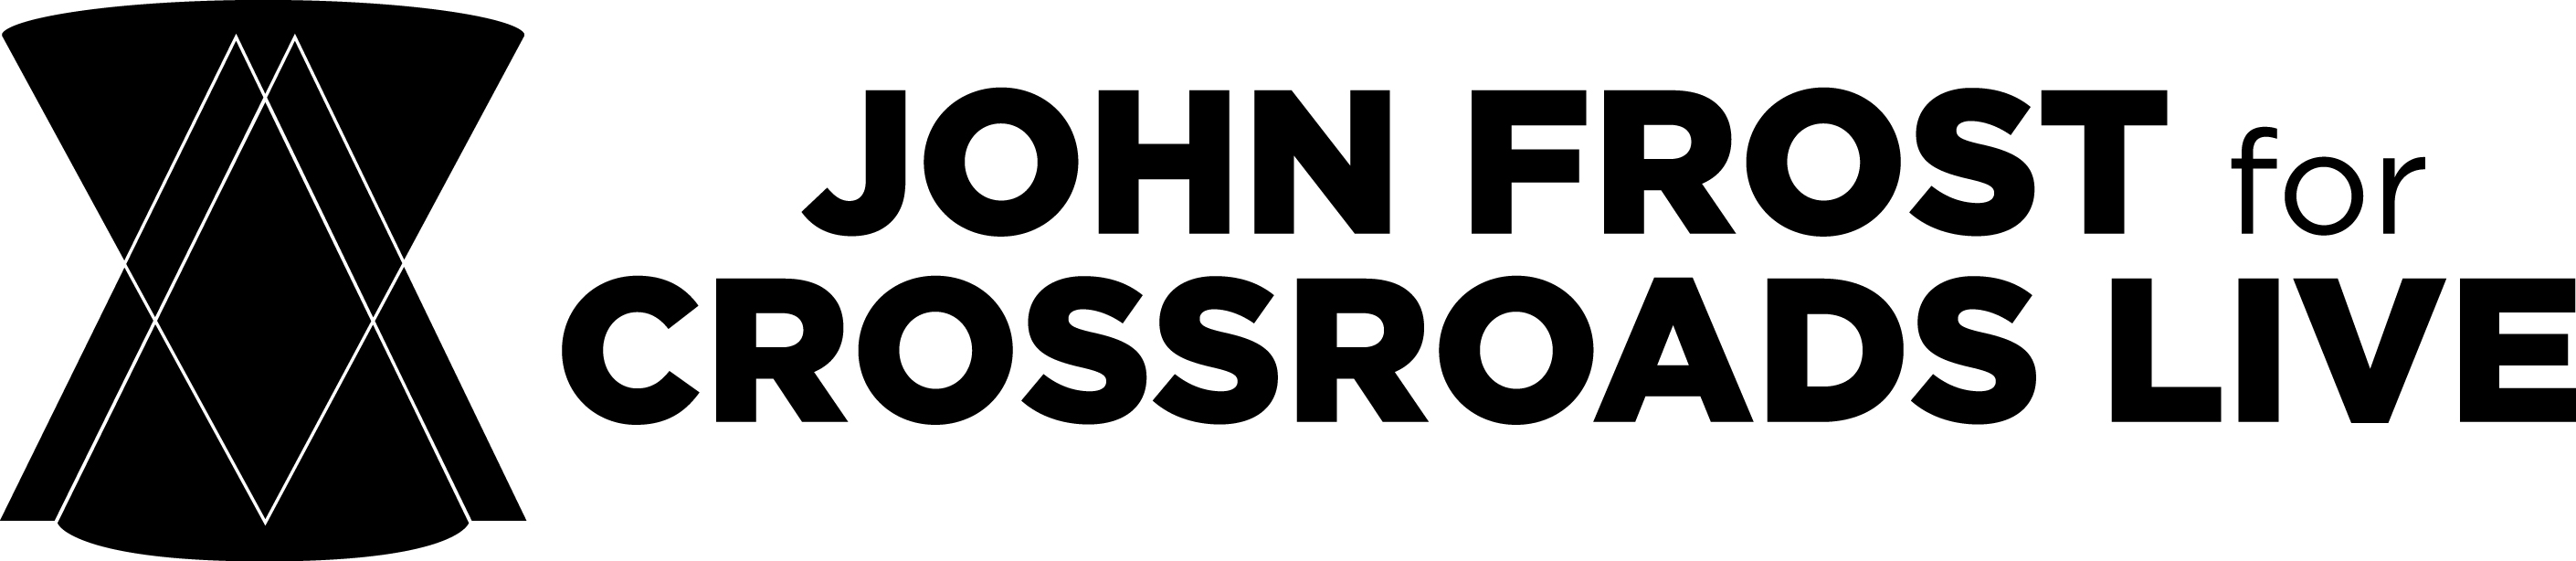 John Frost for Crossroads Live Logo